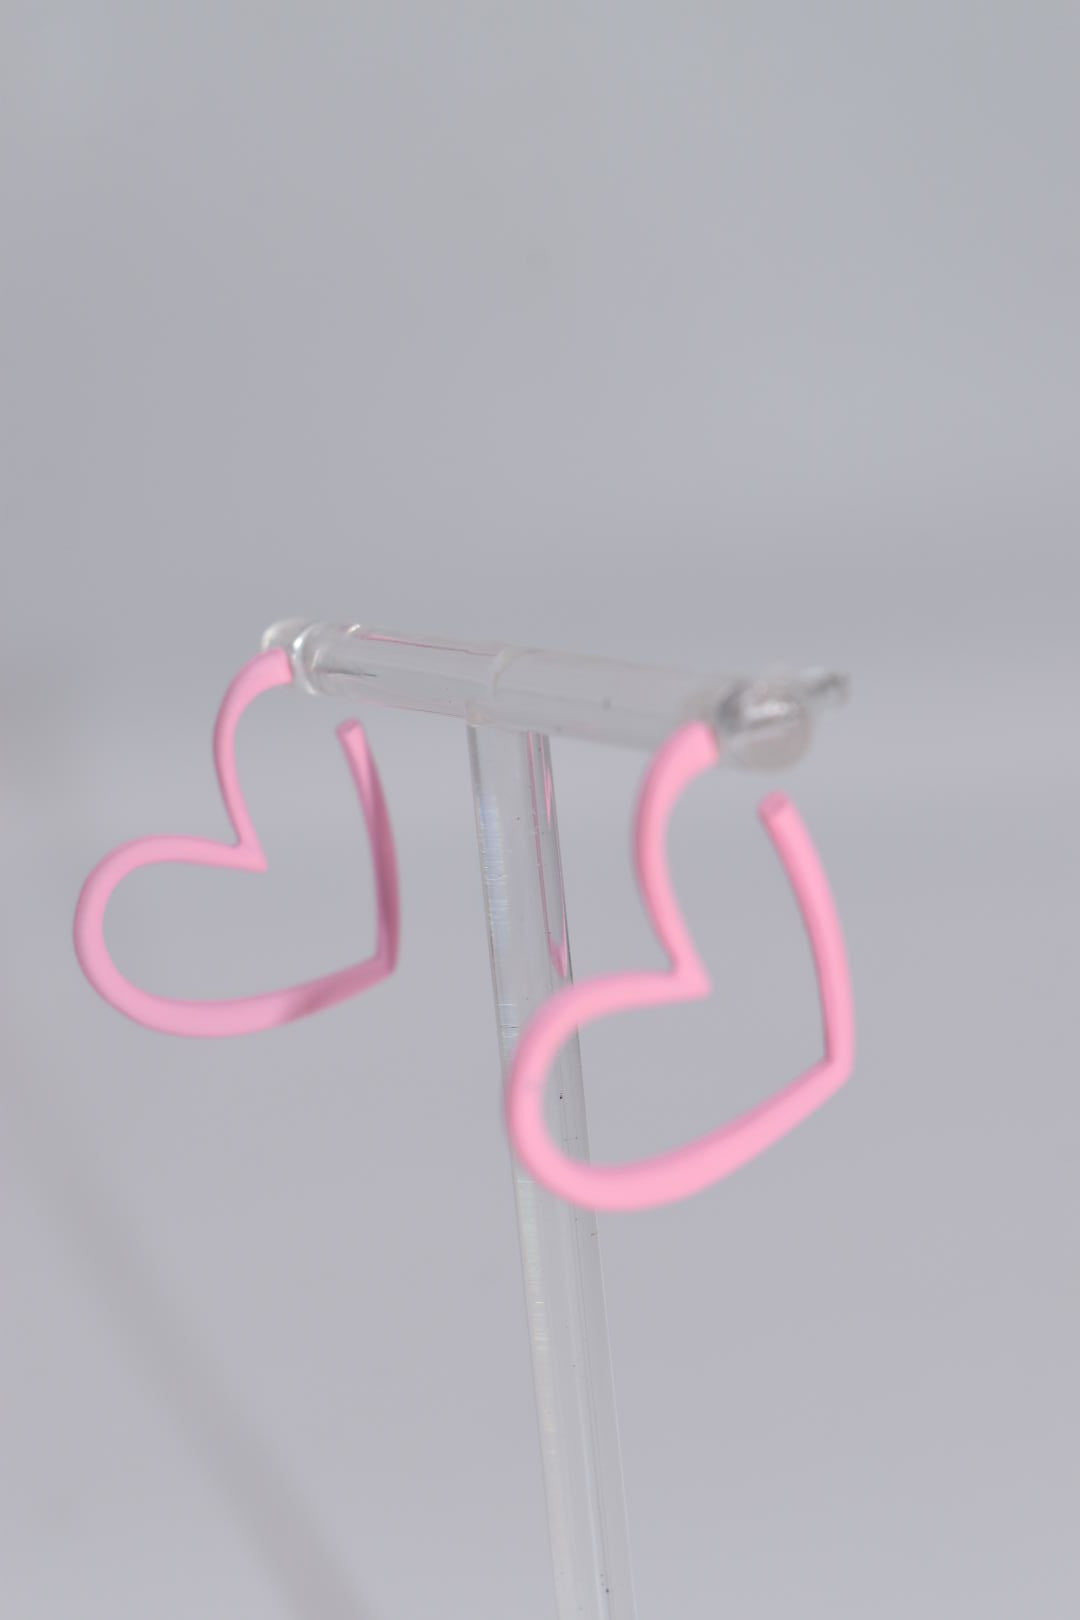 Statement Earrings: Pink Heart Cuff Earrings